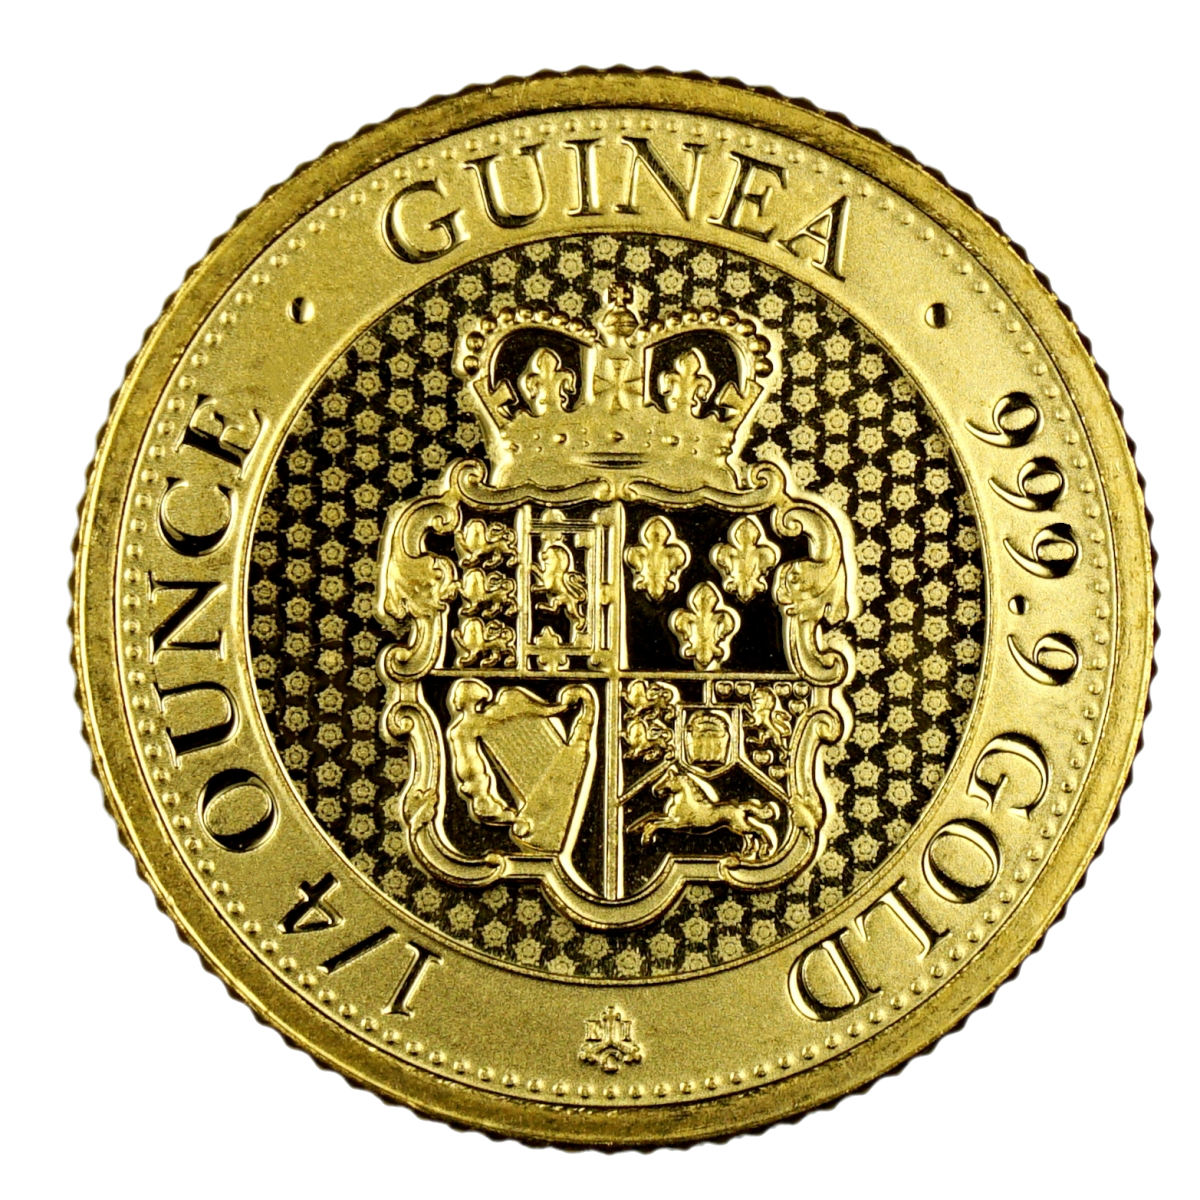 1/4 Ounce 9999 Gold Guinea St. Helena The East India Company (Random Date)